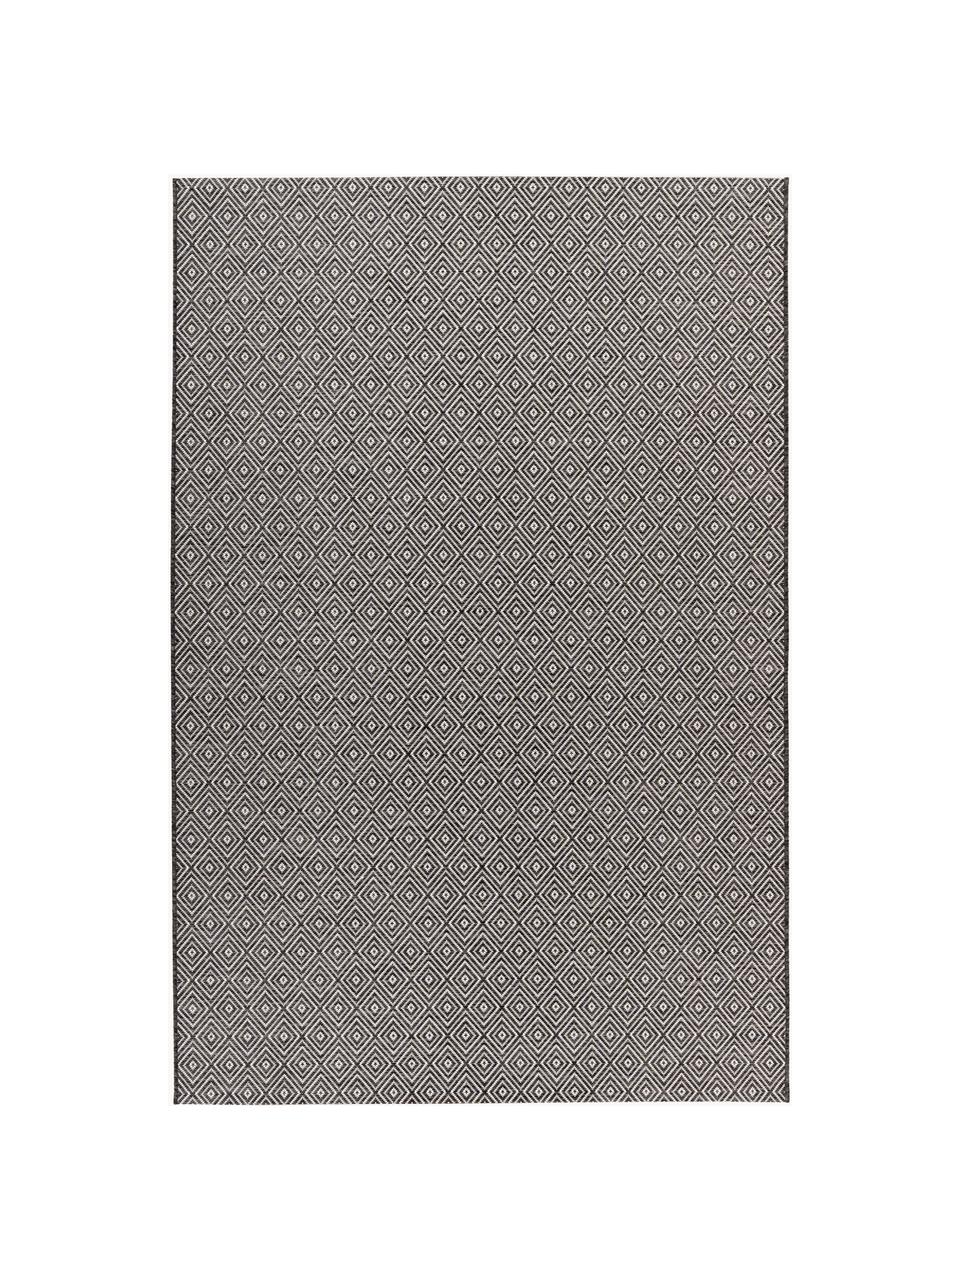 In- & Outdoor Teppich Nordic mit grafischem Muster, 100 % Polypropylen, Grautöne, B 160 x L 230 cm (Größe M)